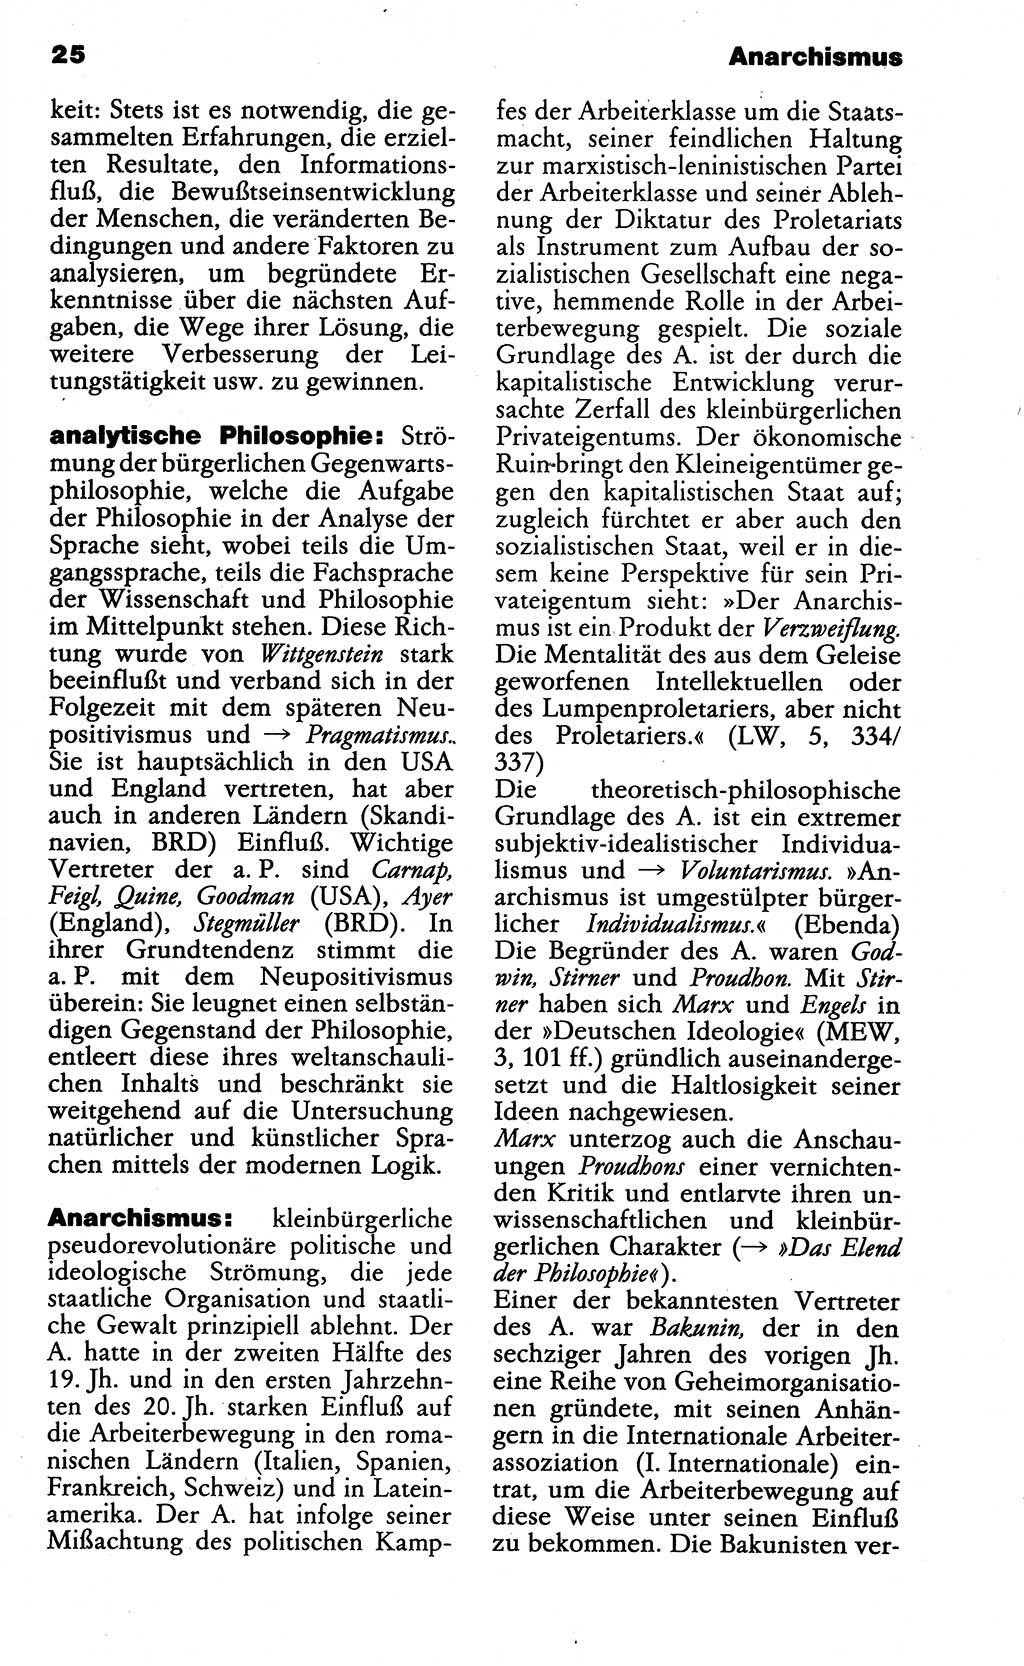 Wörterbuch der marxistisch-leninistischen Philosophie [Deutsche Demokratische Republik (DDR)] 1985, Seite 25 (Wb. ML Phil. DDR 1985, S. 25)